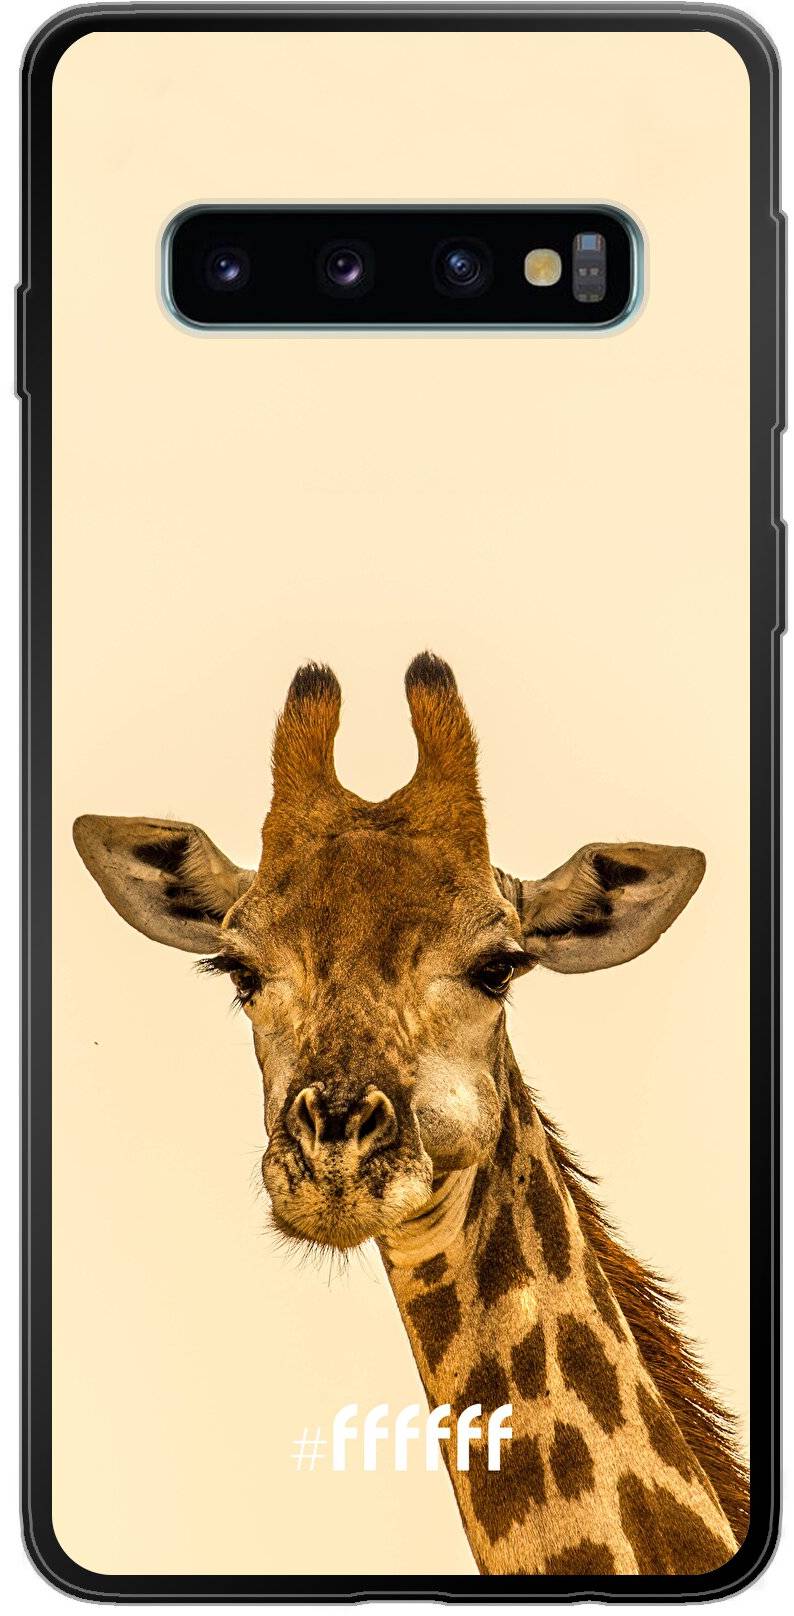 Giraffe Galaxy S10